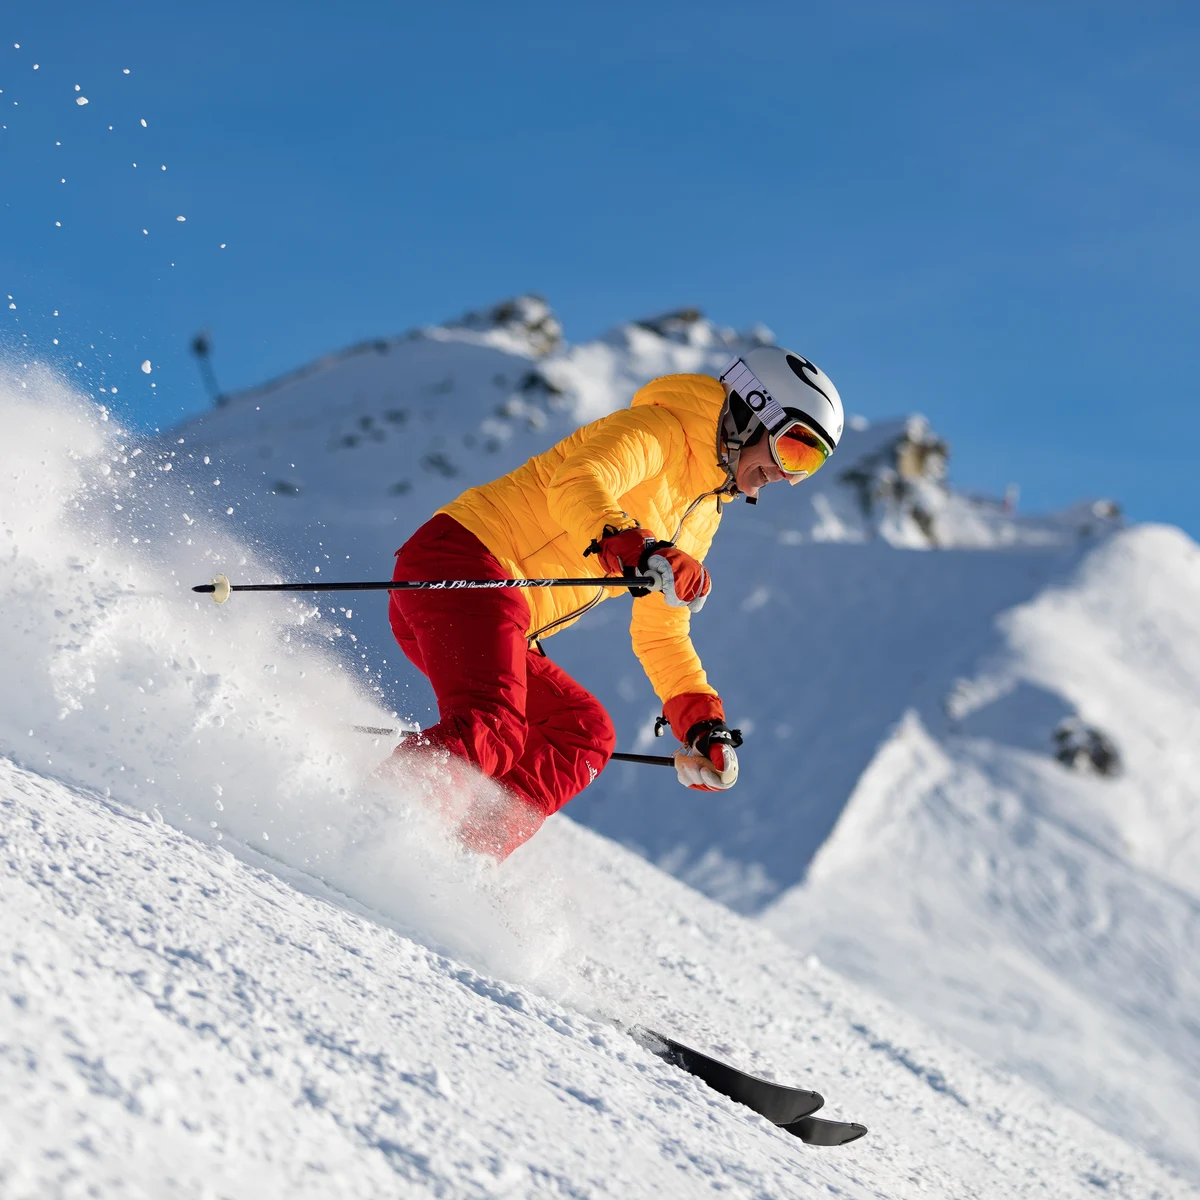 Compra ropa de esquí en línea  Fácil y rápido en